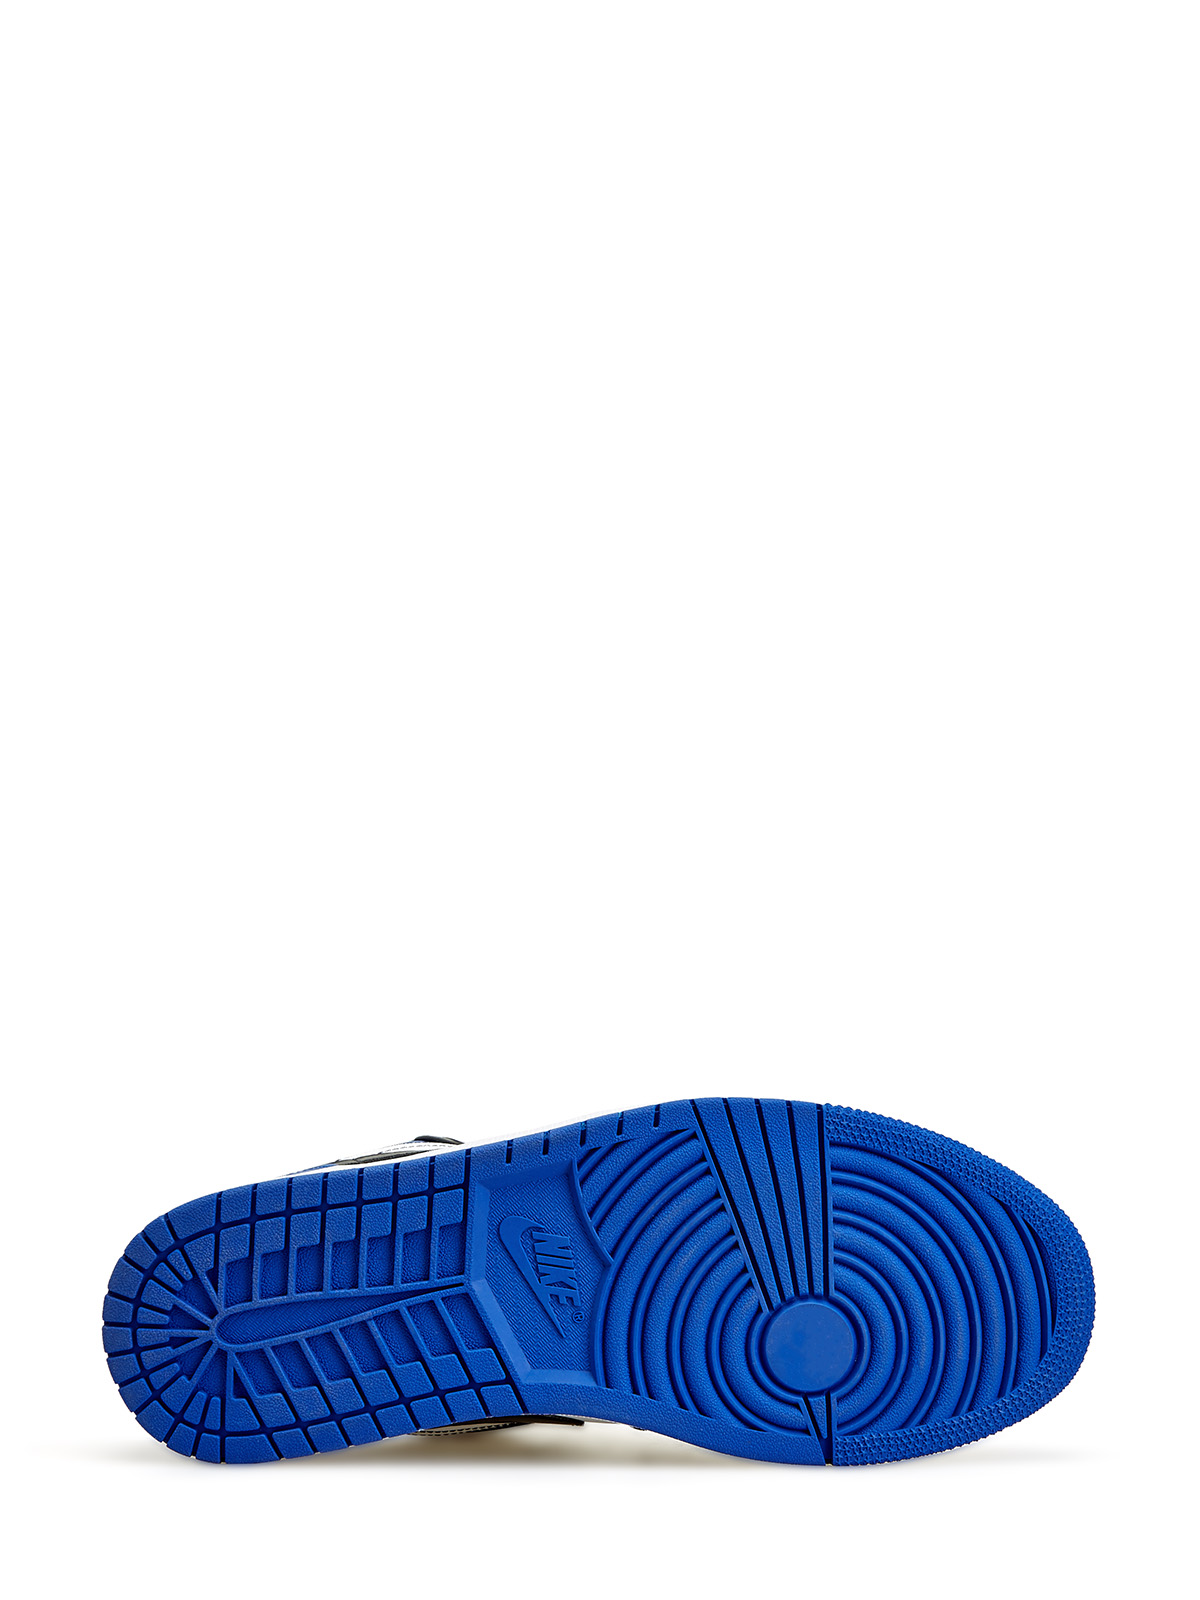 Кроссовки Jordan 1 Low 'Royal Toe' Jordan, цвет синий, размер 43 - фото 5